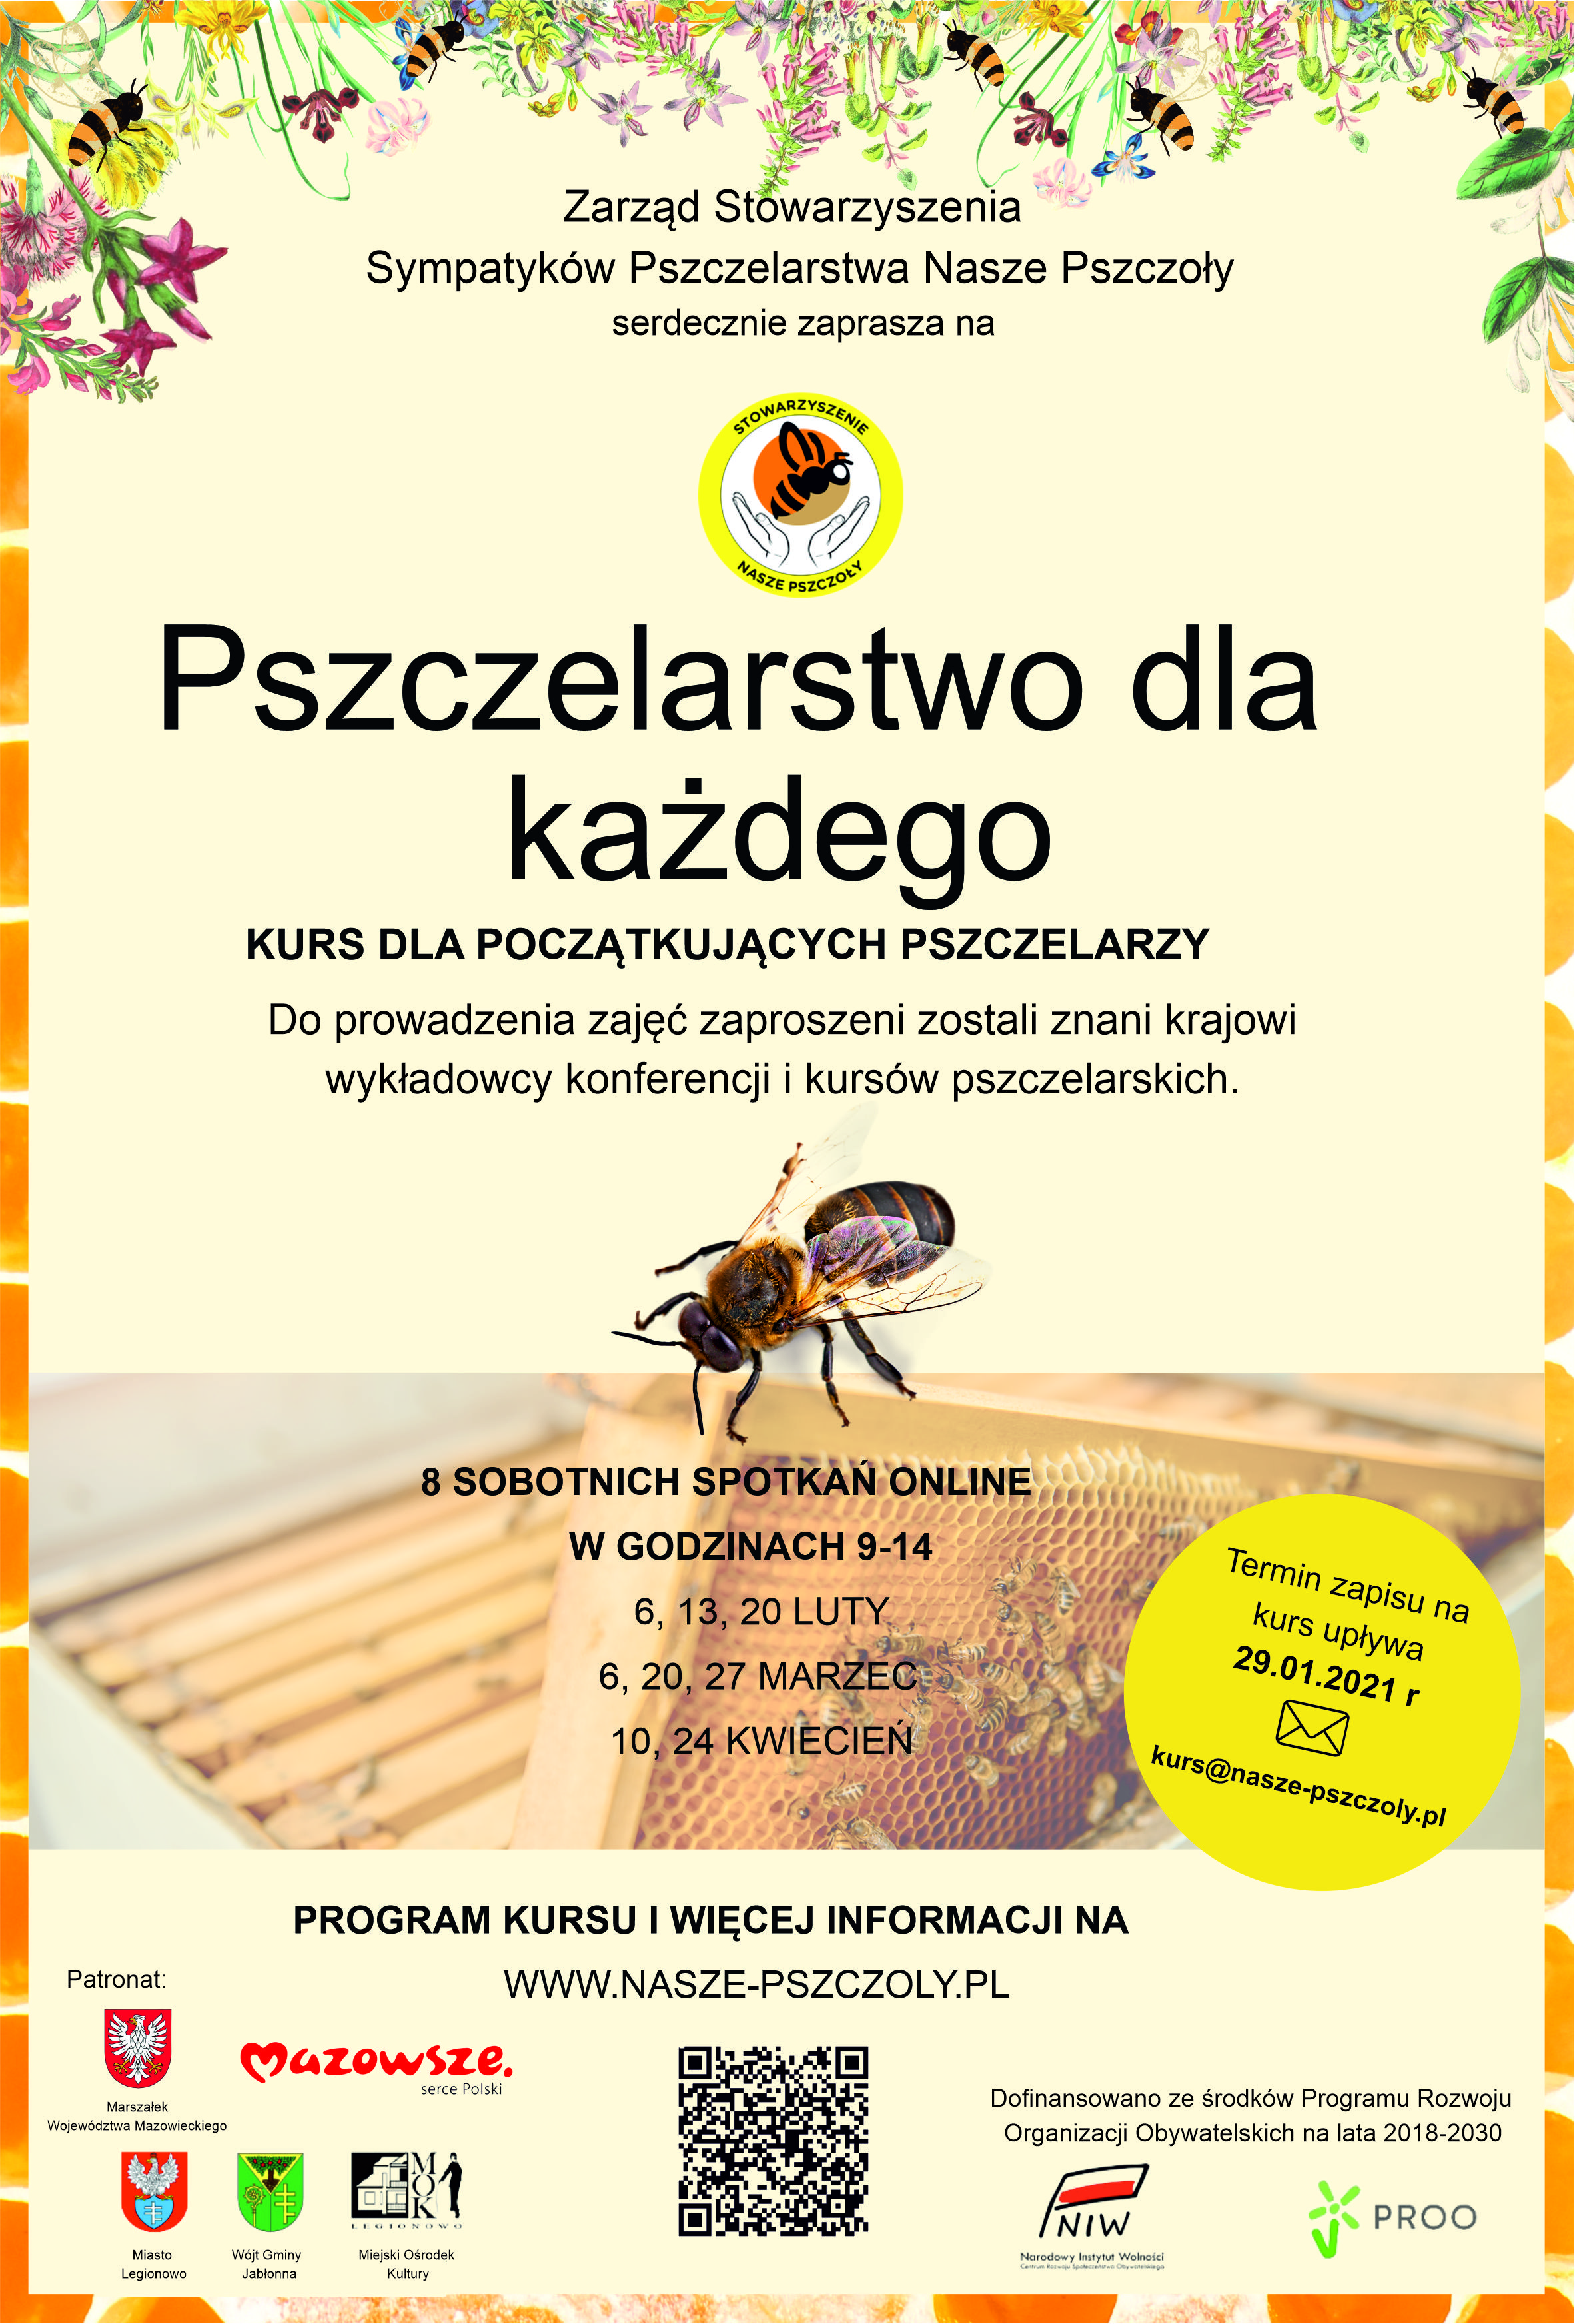 Pszczelarstwo dla kazdego, zaproszenie na kurs pszczelarski - kurs dla początkujących pszczelarzy